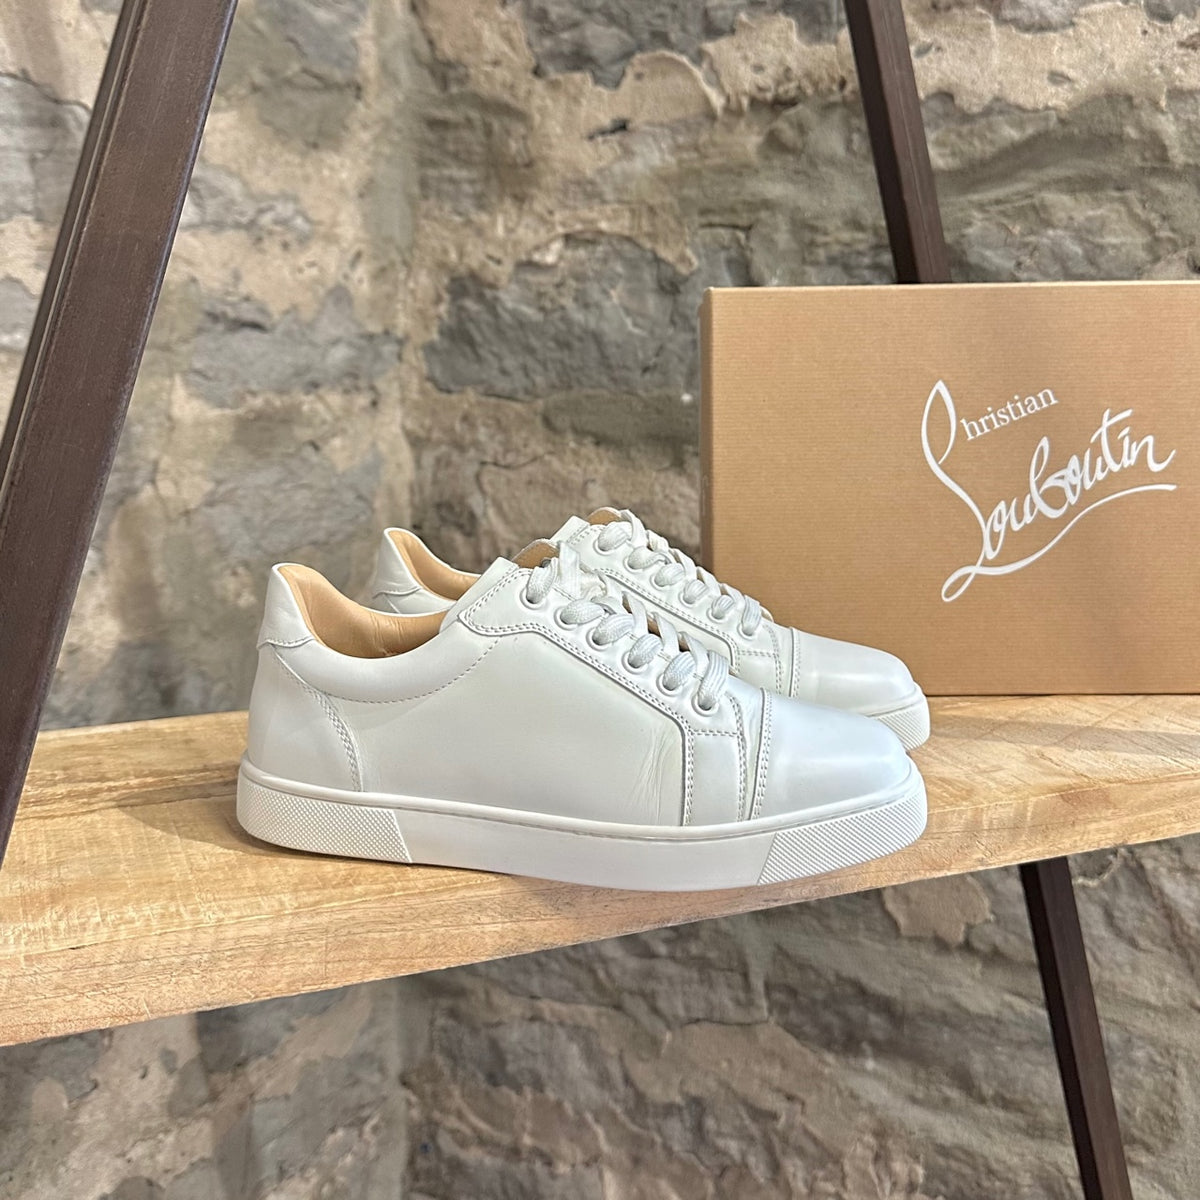 Vieira white leather sneakers